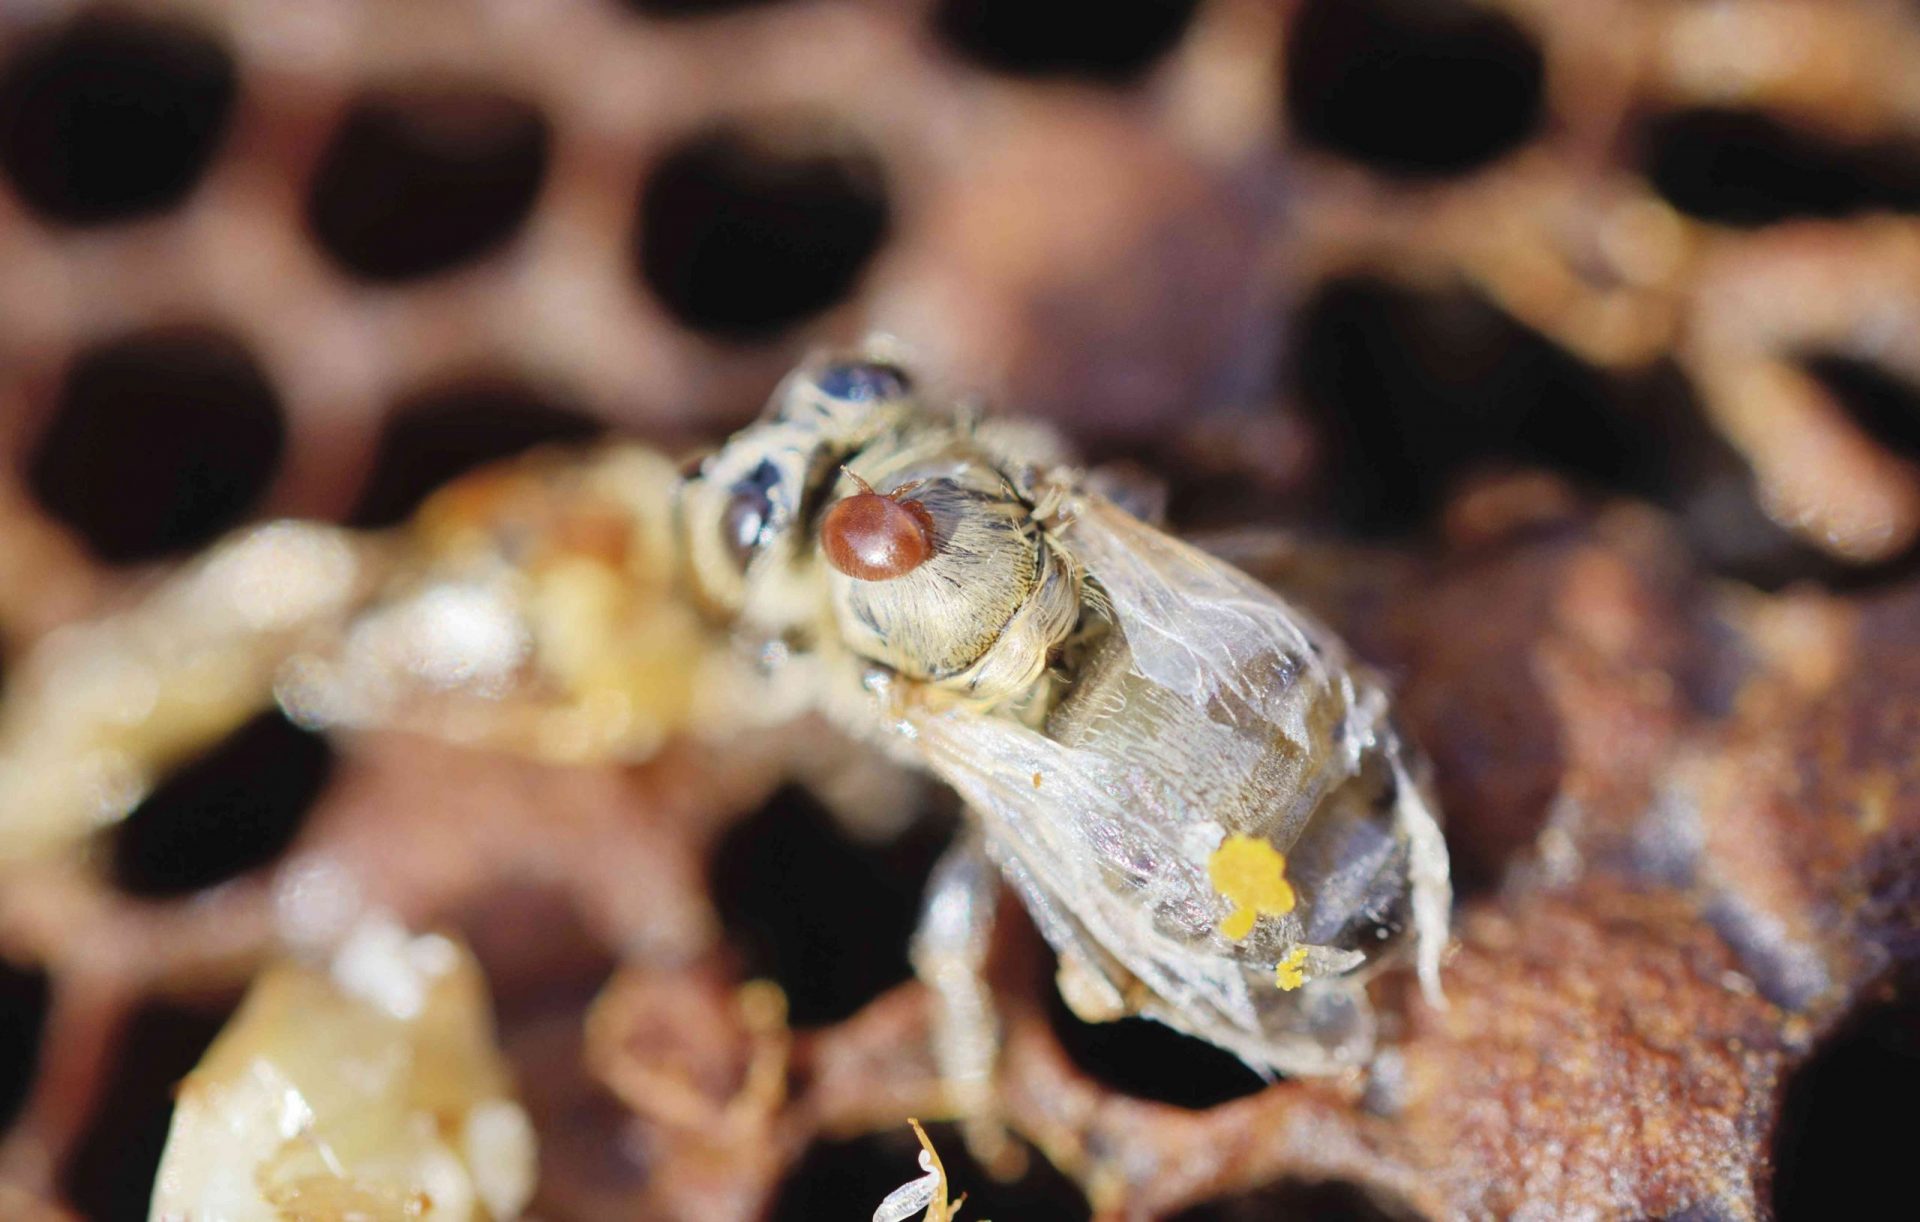 Colonia de abejas infestada de ácaros Varroa de la abeja de la miel -Varroa destructor, syn. Jacobsoni-, ácaro en una abeja recién emergida y deformada -Apis mellifera var carnica-, junto a larvas muertas, Baviera, Alemania